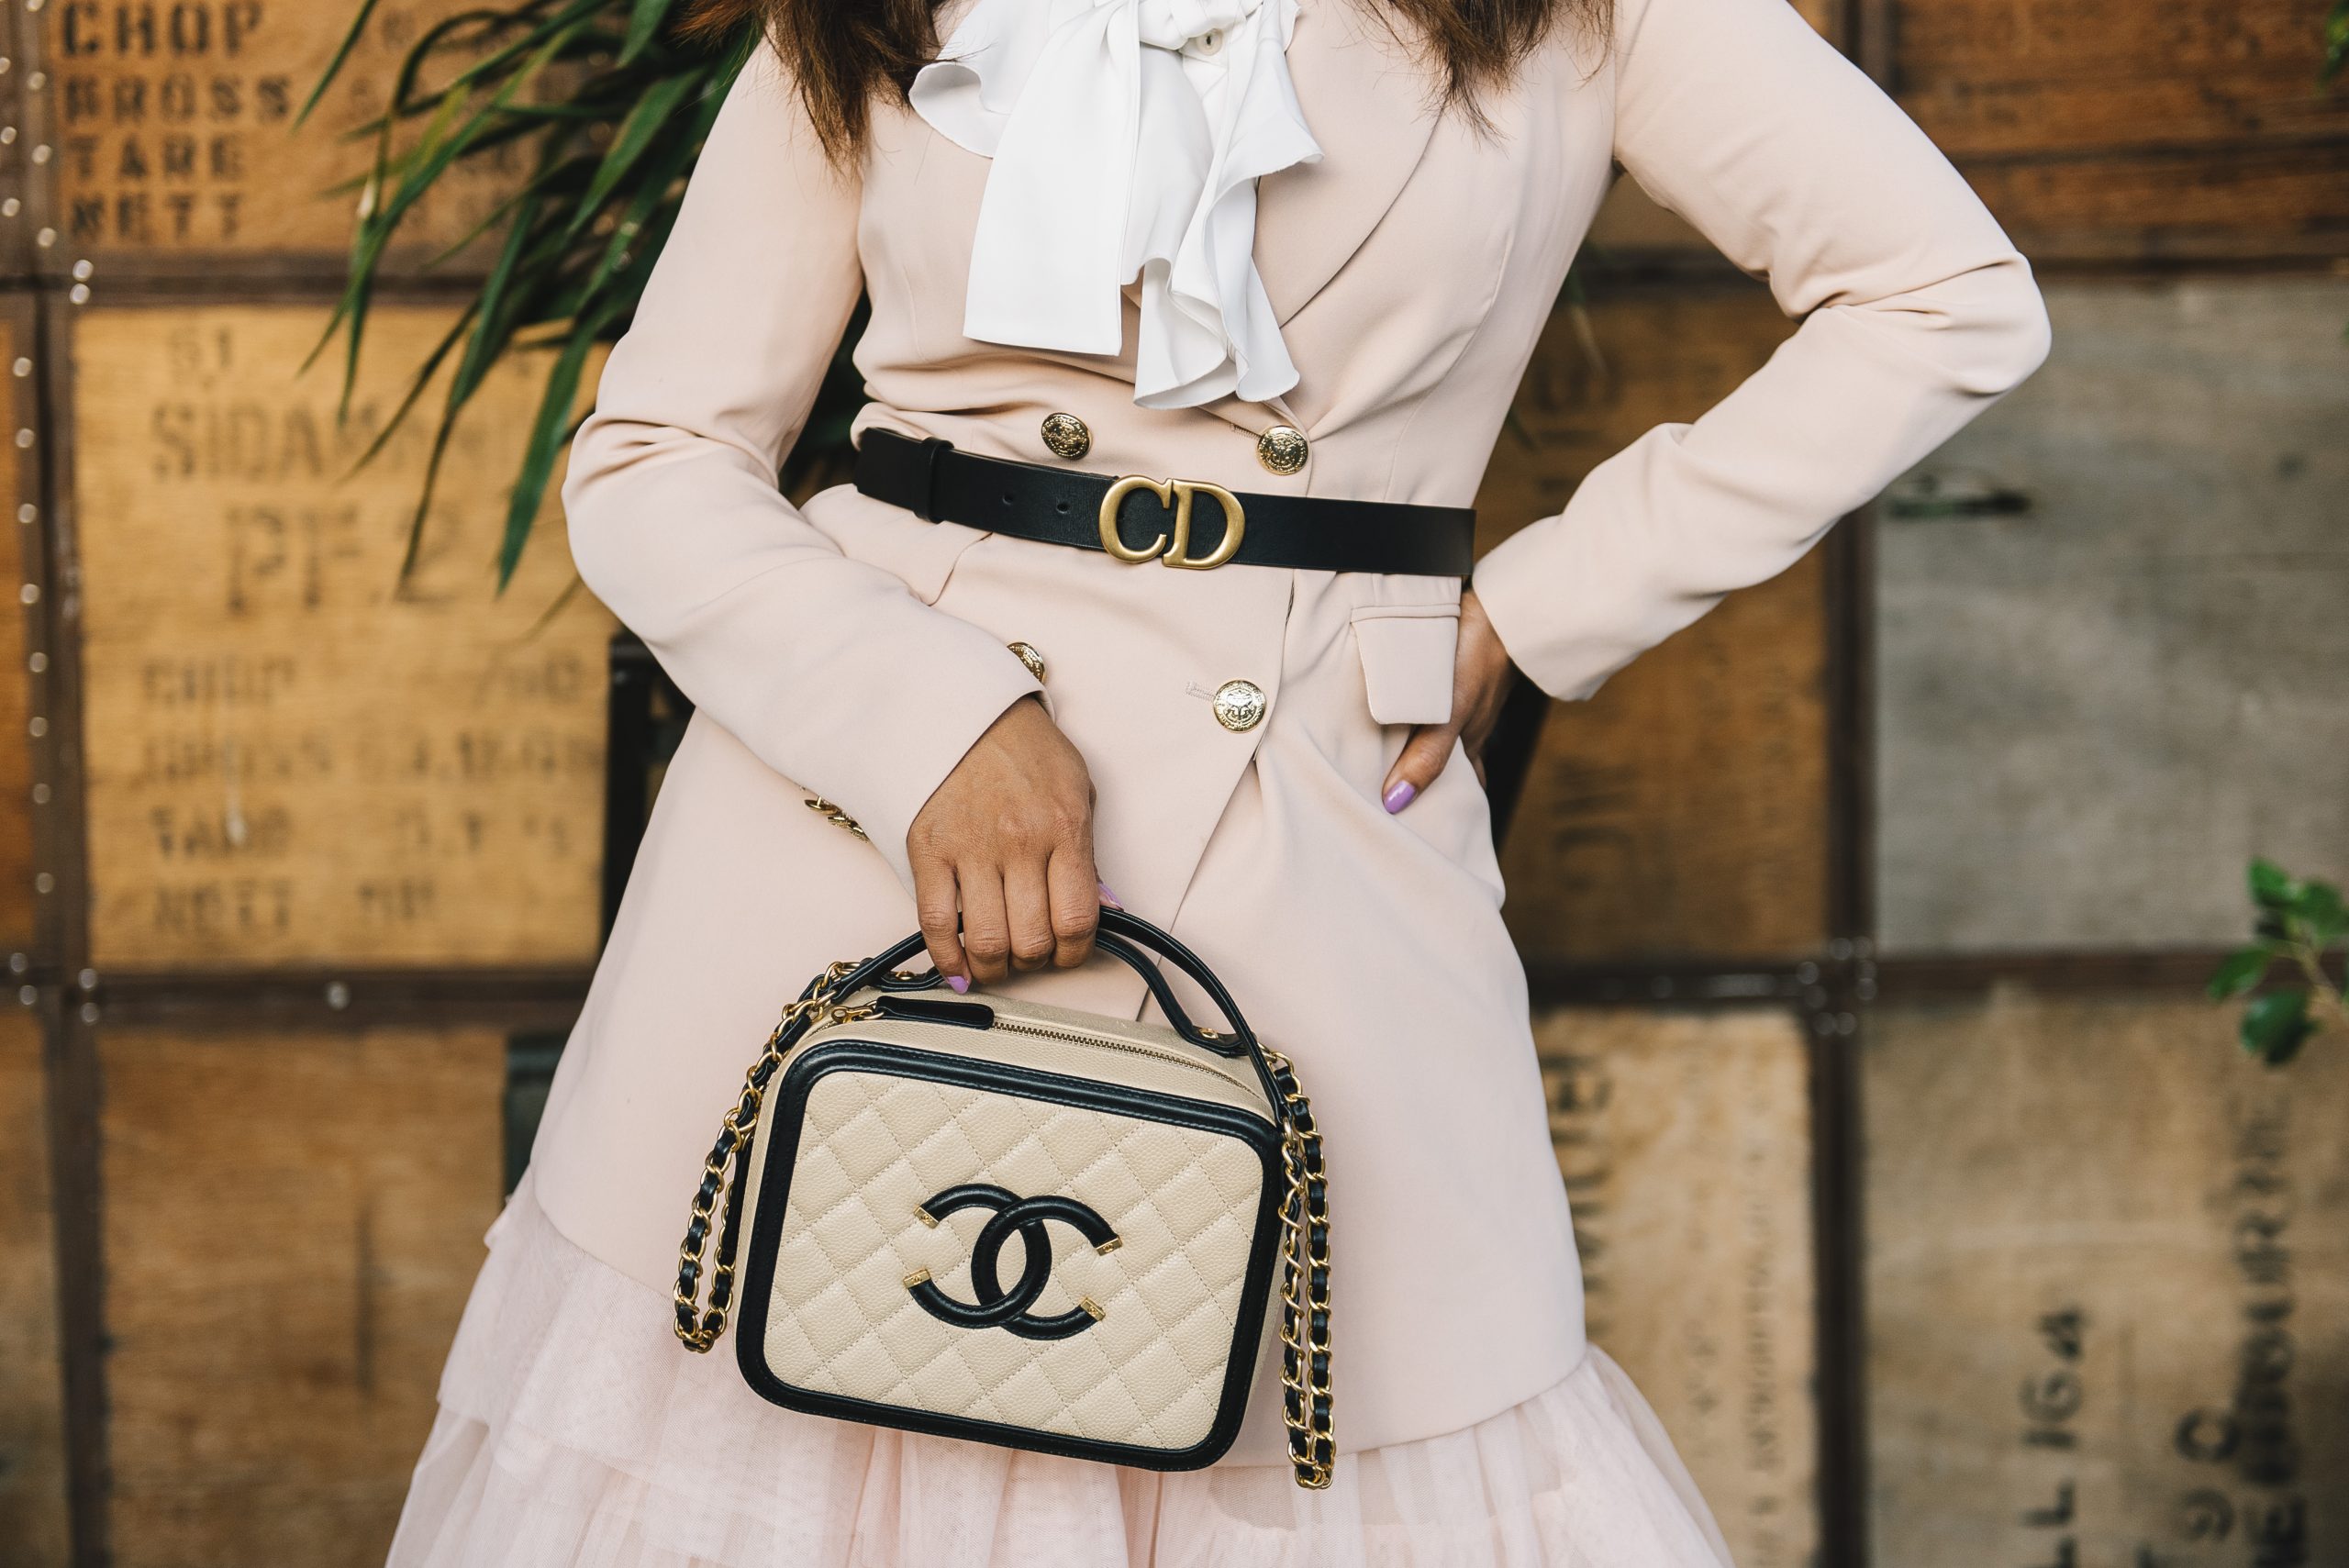 Tăng giá đã thúc đẩy cho doanh số Chanel bùng nổ  StyleRepublikcom   Thời Trang sáng tạo và kinh doanh